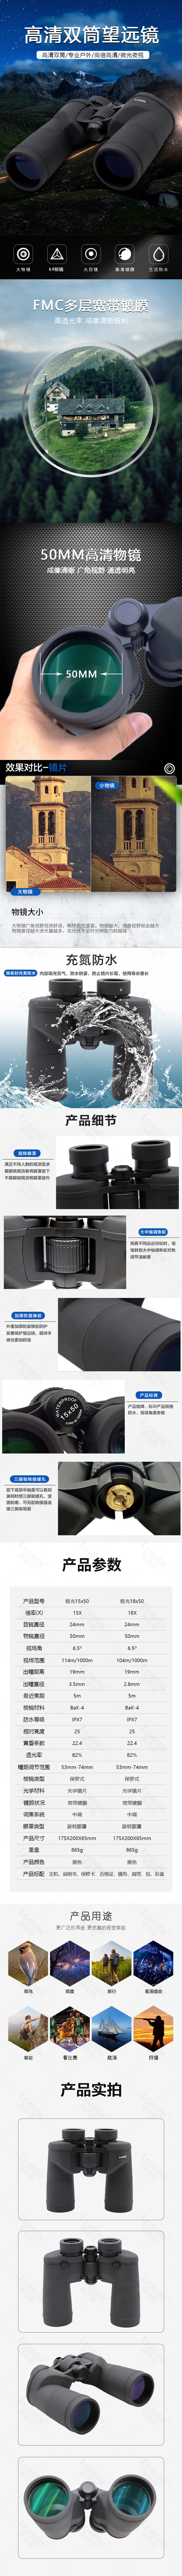 Lcantu徕佳图极光15x50  18x50高清双筒望远镜充氮防水望远镜-水印.jpg